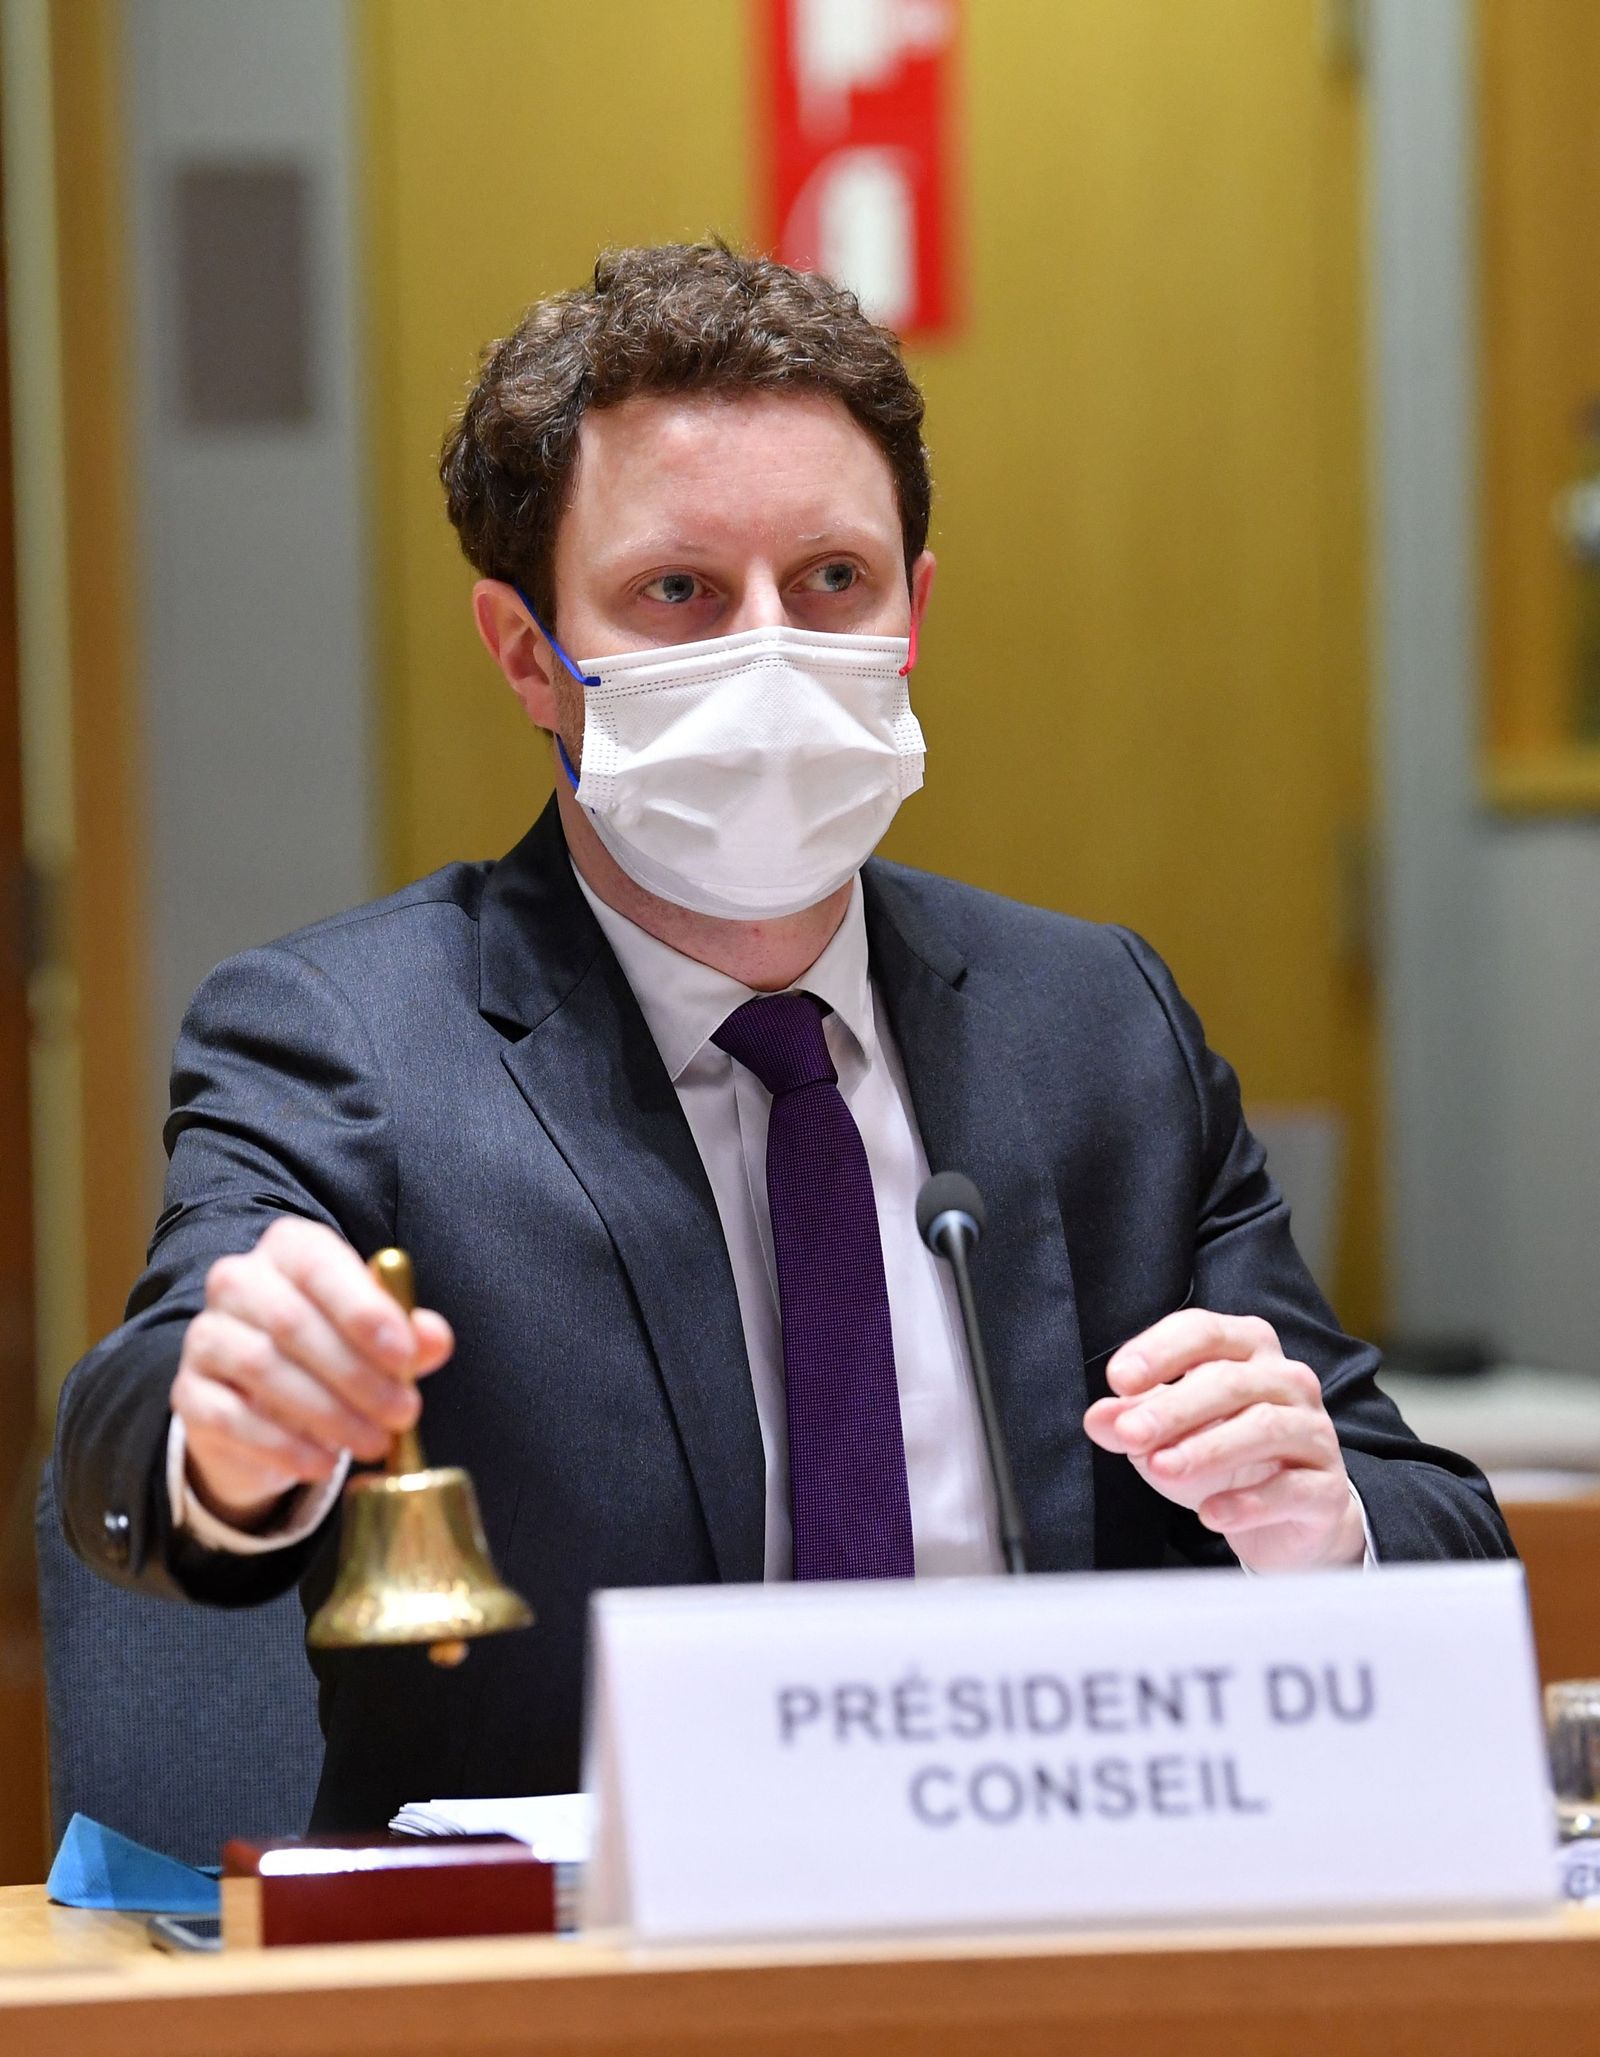 وزير الدولة الفرنسي للشؤون الأوروبية، كليمان بون يترأس اجتماع مجلس الشؤون العامة بالاتحاد الأوروبي في بروكسل - 22 فبراير 2022 - AFP